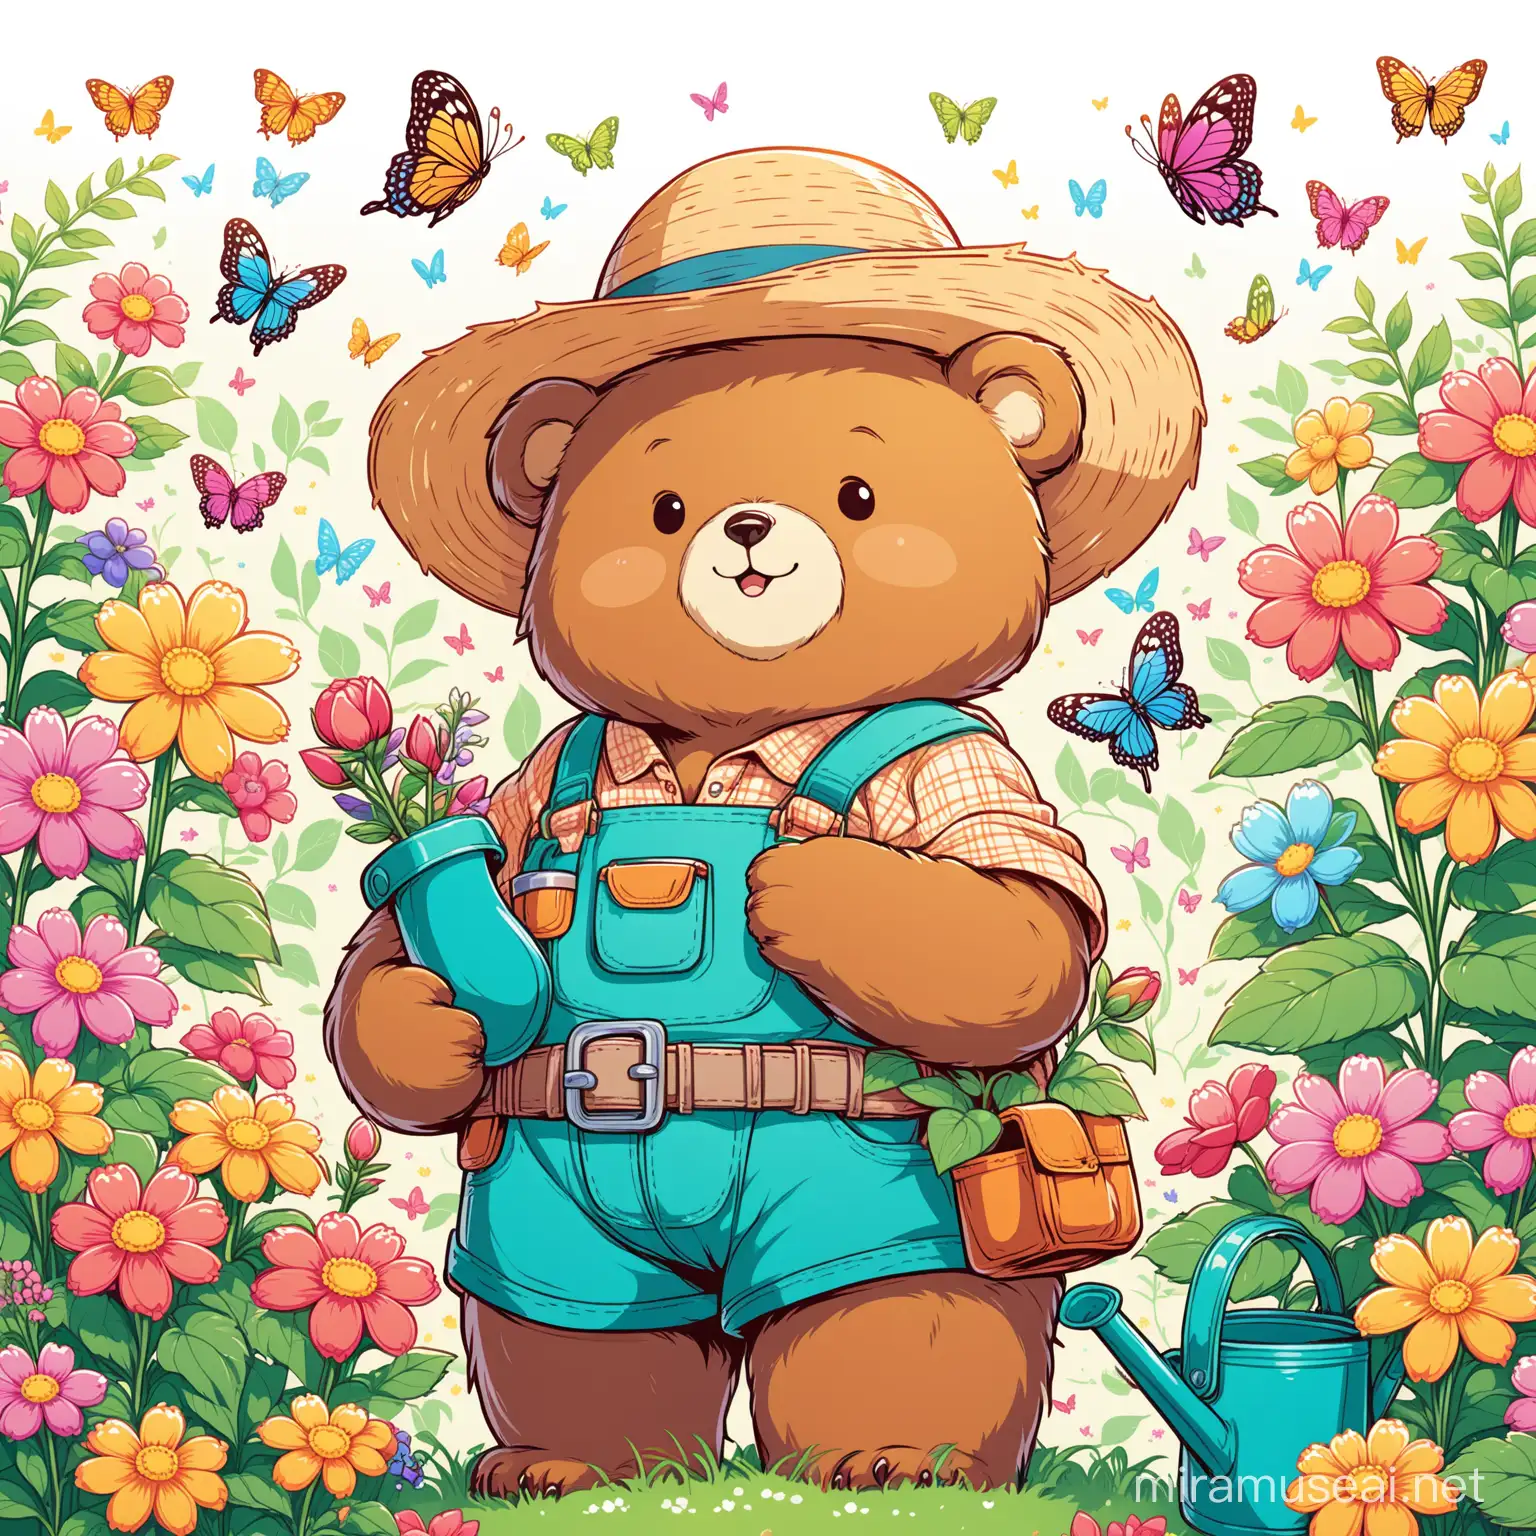 Mama Bear Gardening in a Vibrant Cozy Garden